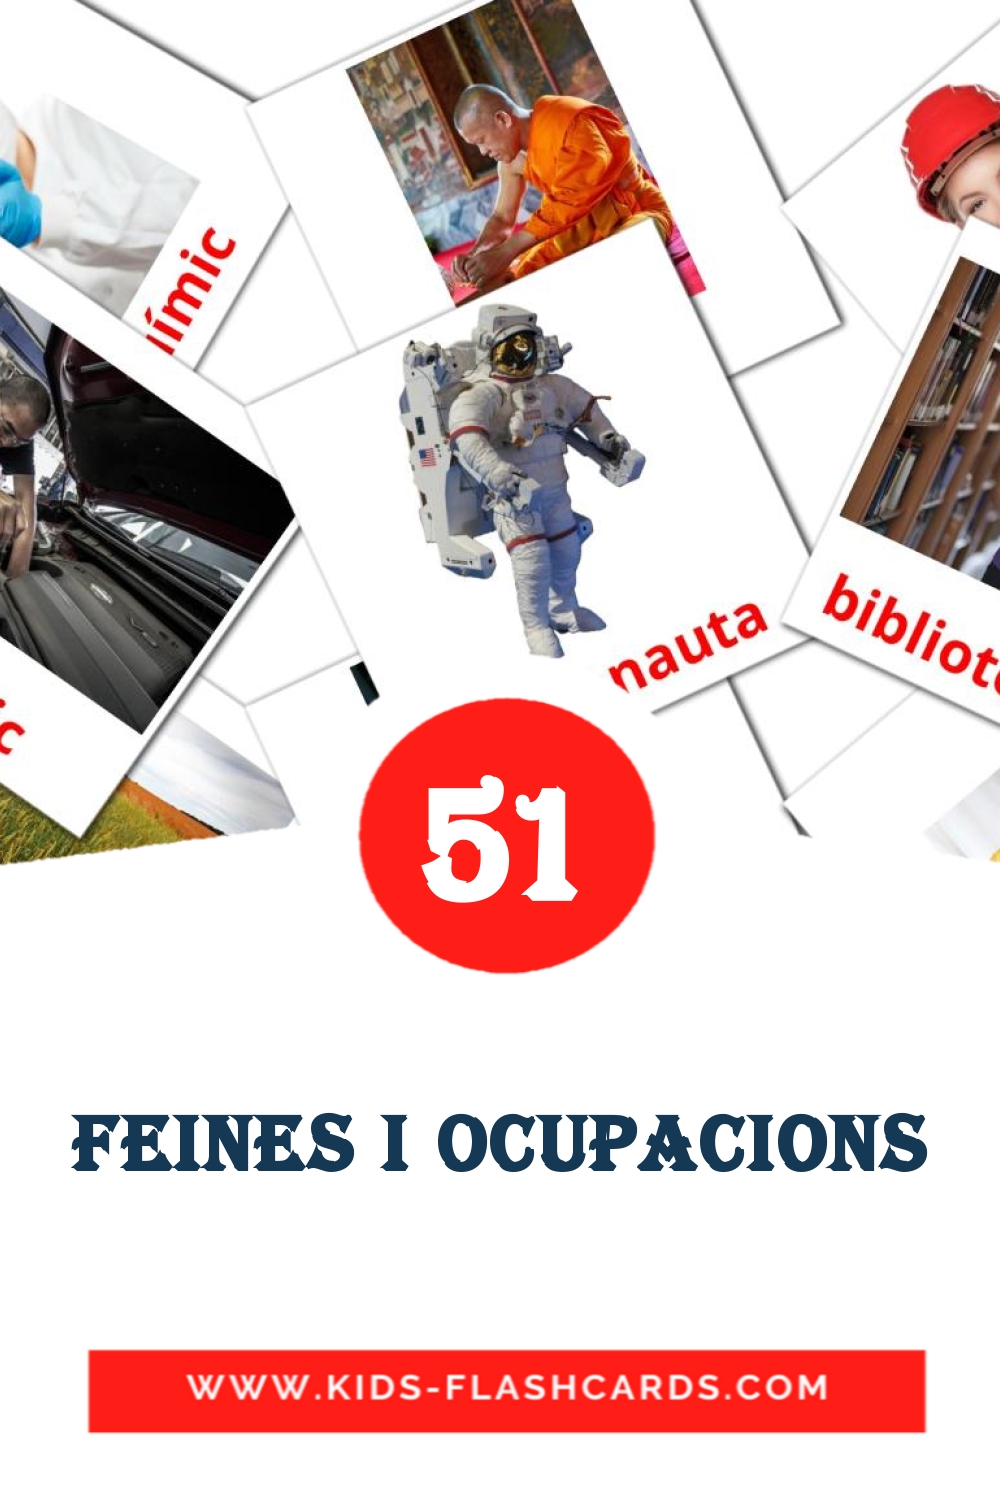 51 Cartões com Imagens de Feines i Ocupacions para Jardim de Infância em catalão